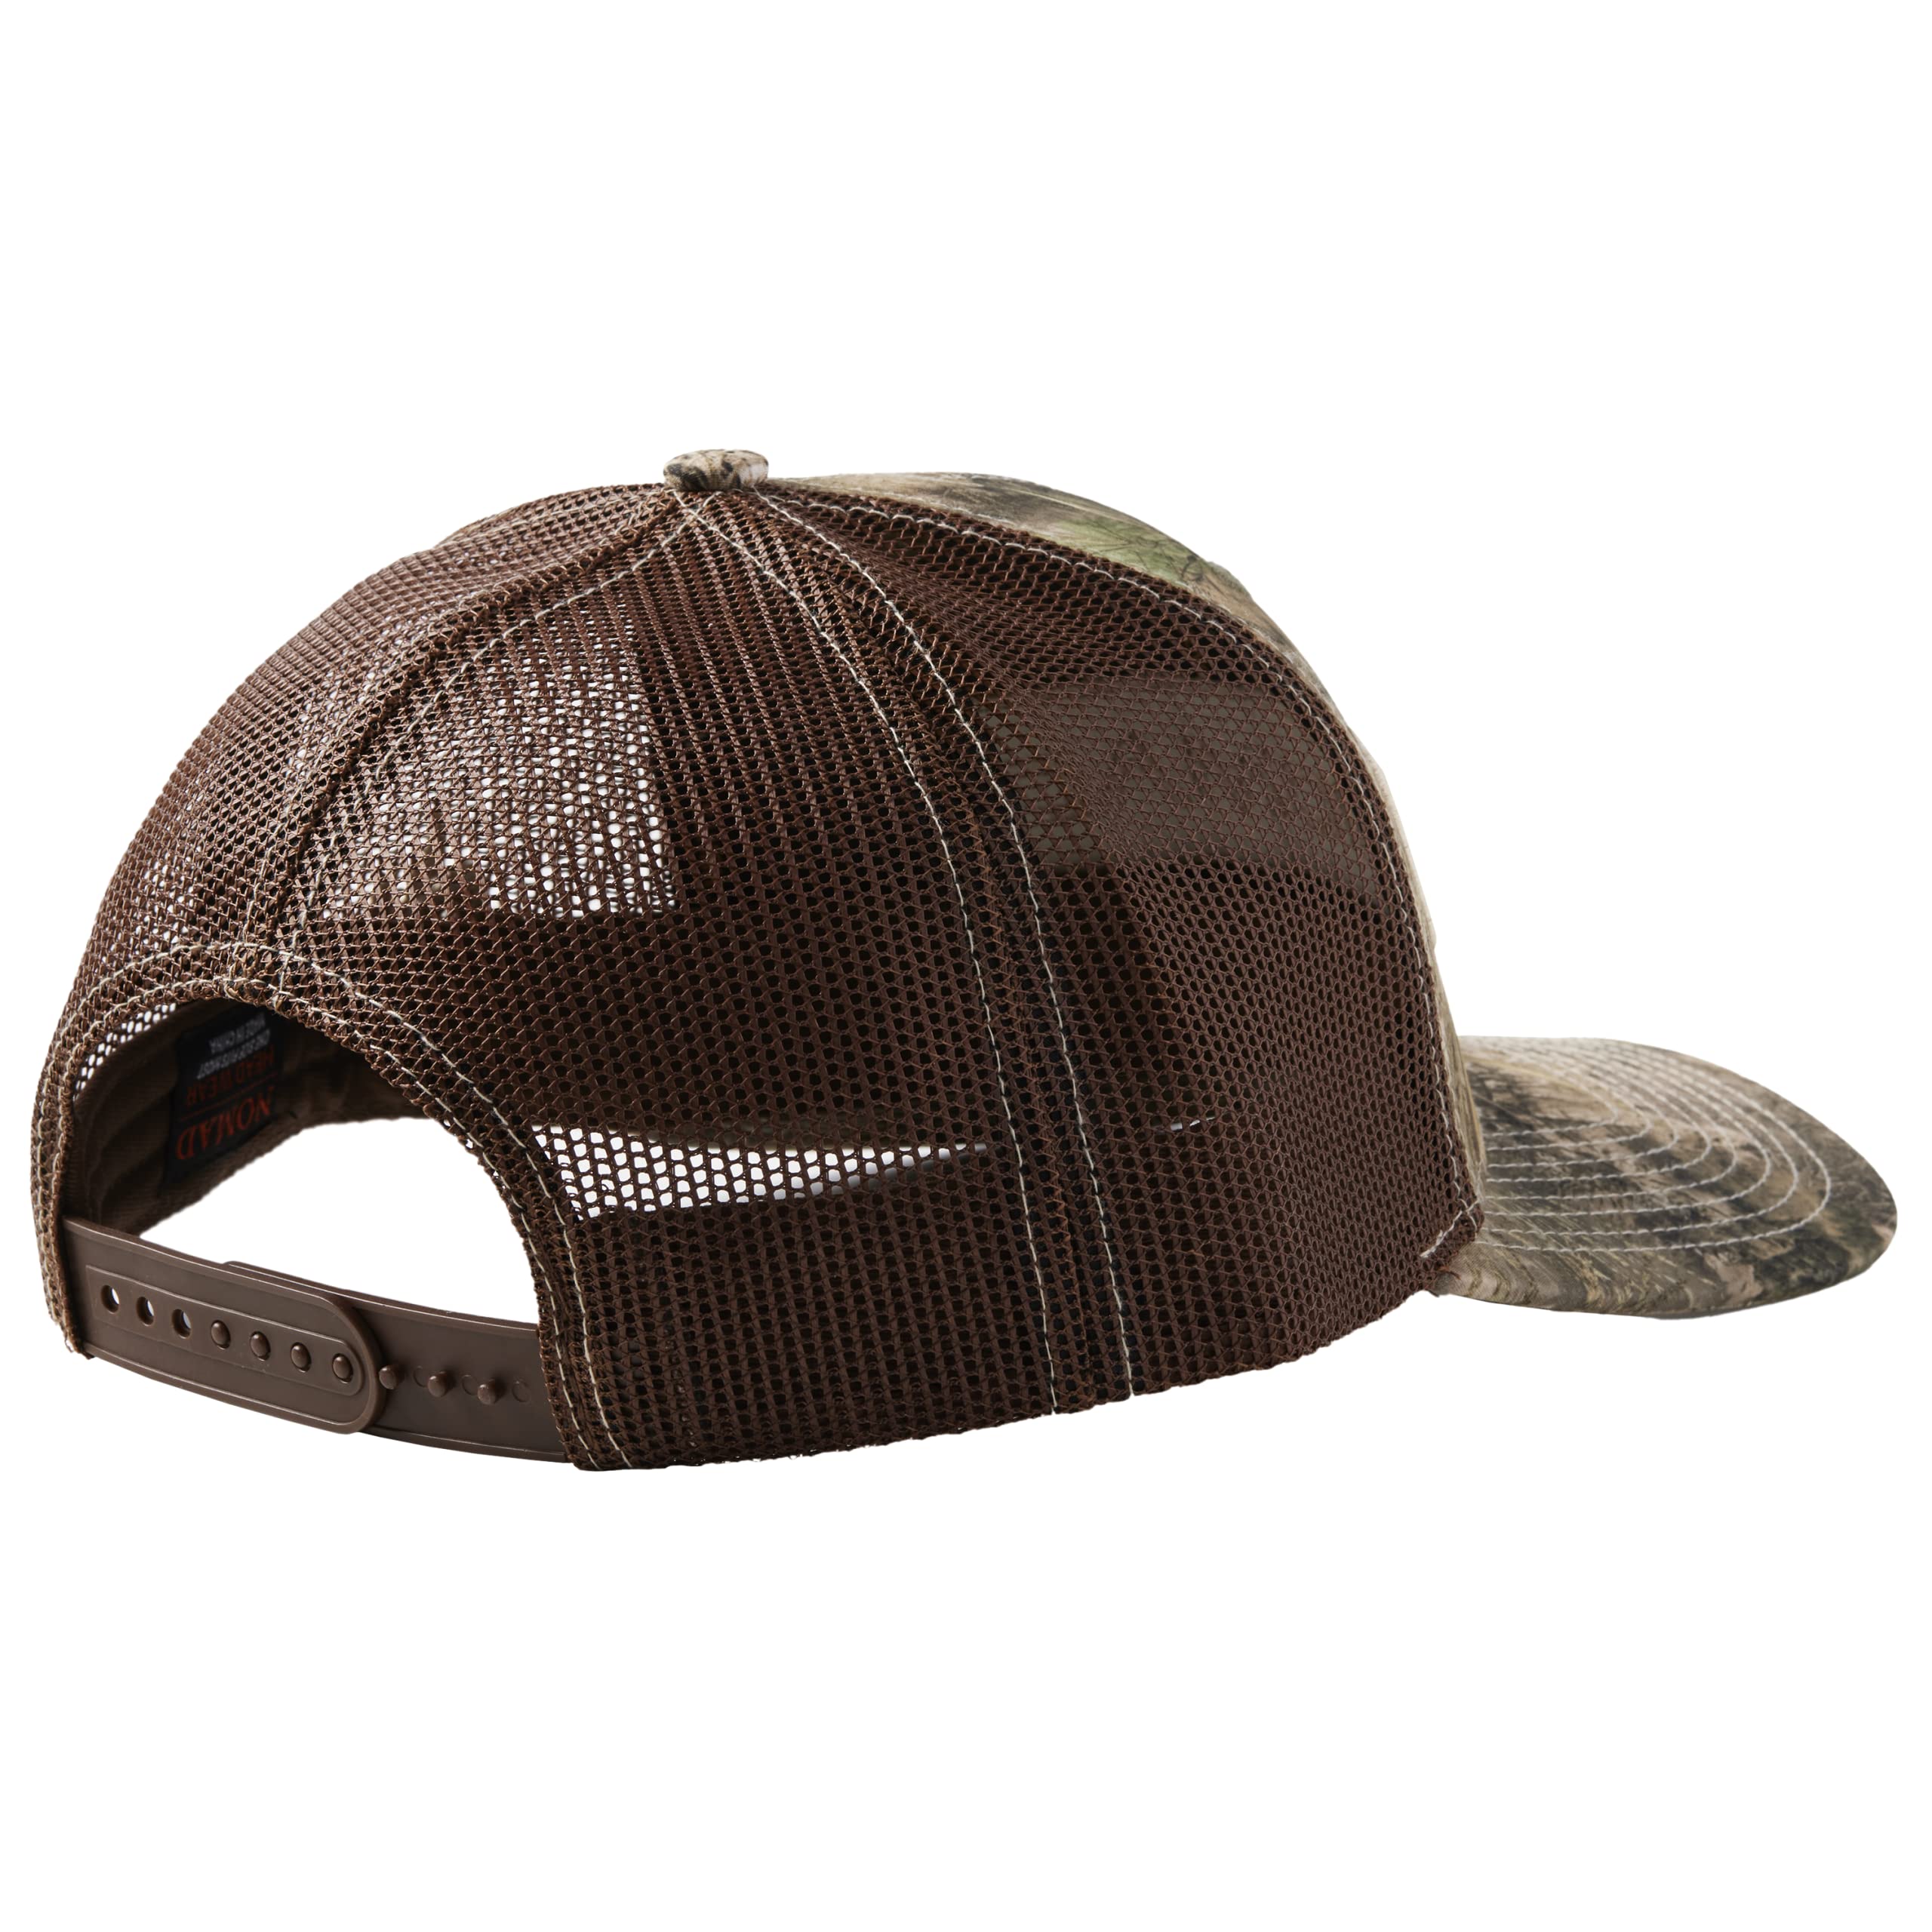 Nomad Men's Trucker Adjustable Mesh Hunting Snap Back Hat